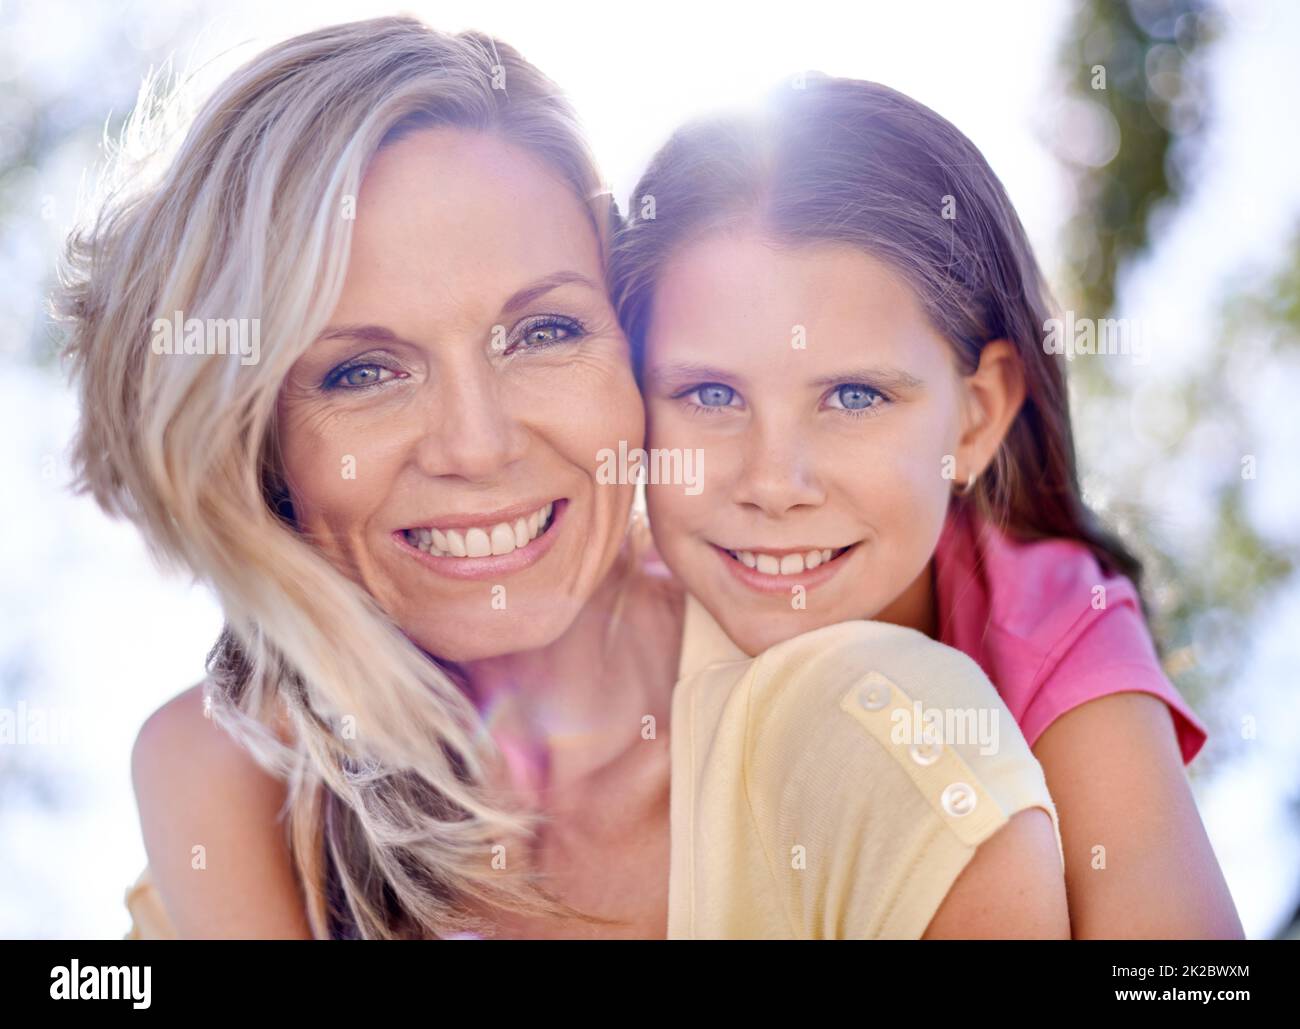 Condividere sorrisi corrispondenti. Una madre sorridente con la figlia sulla schiena mentre si trova all'aperto. Foto Stock